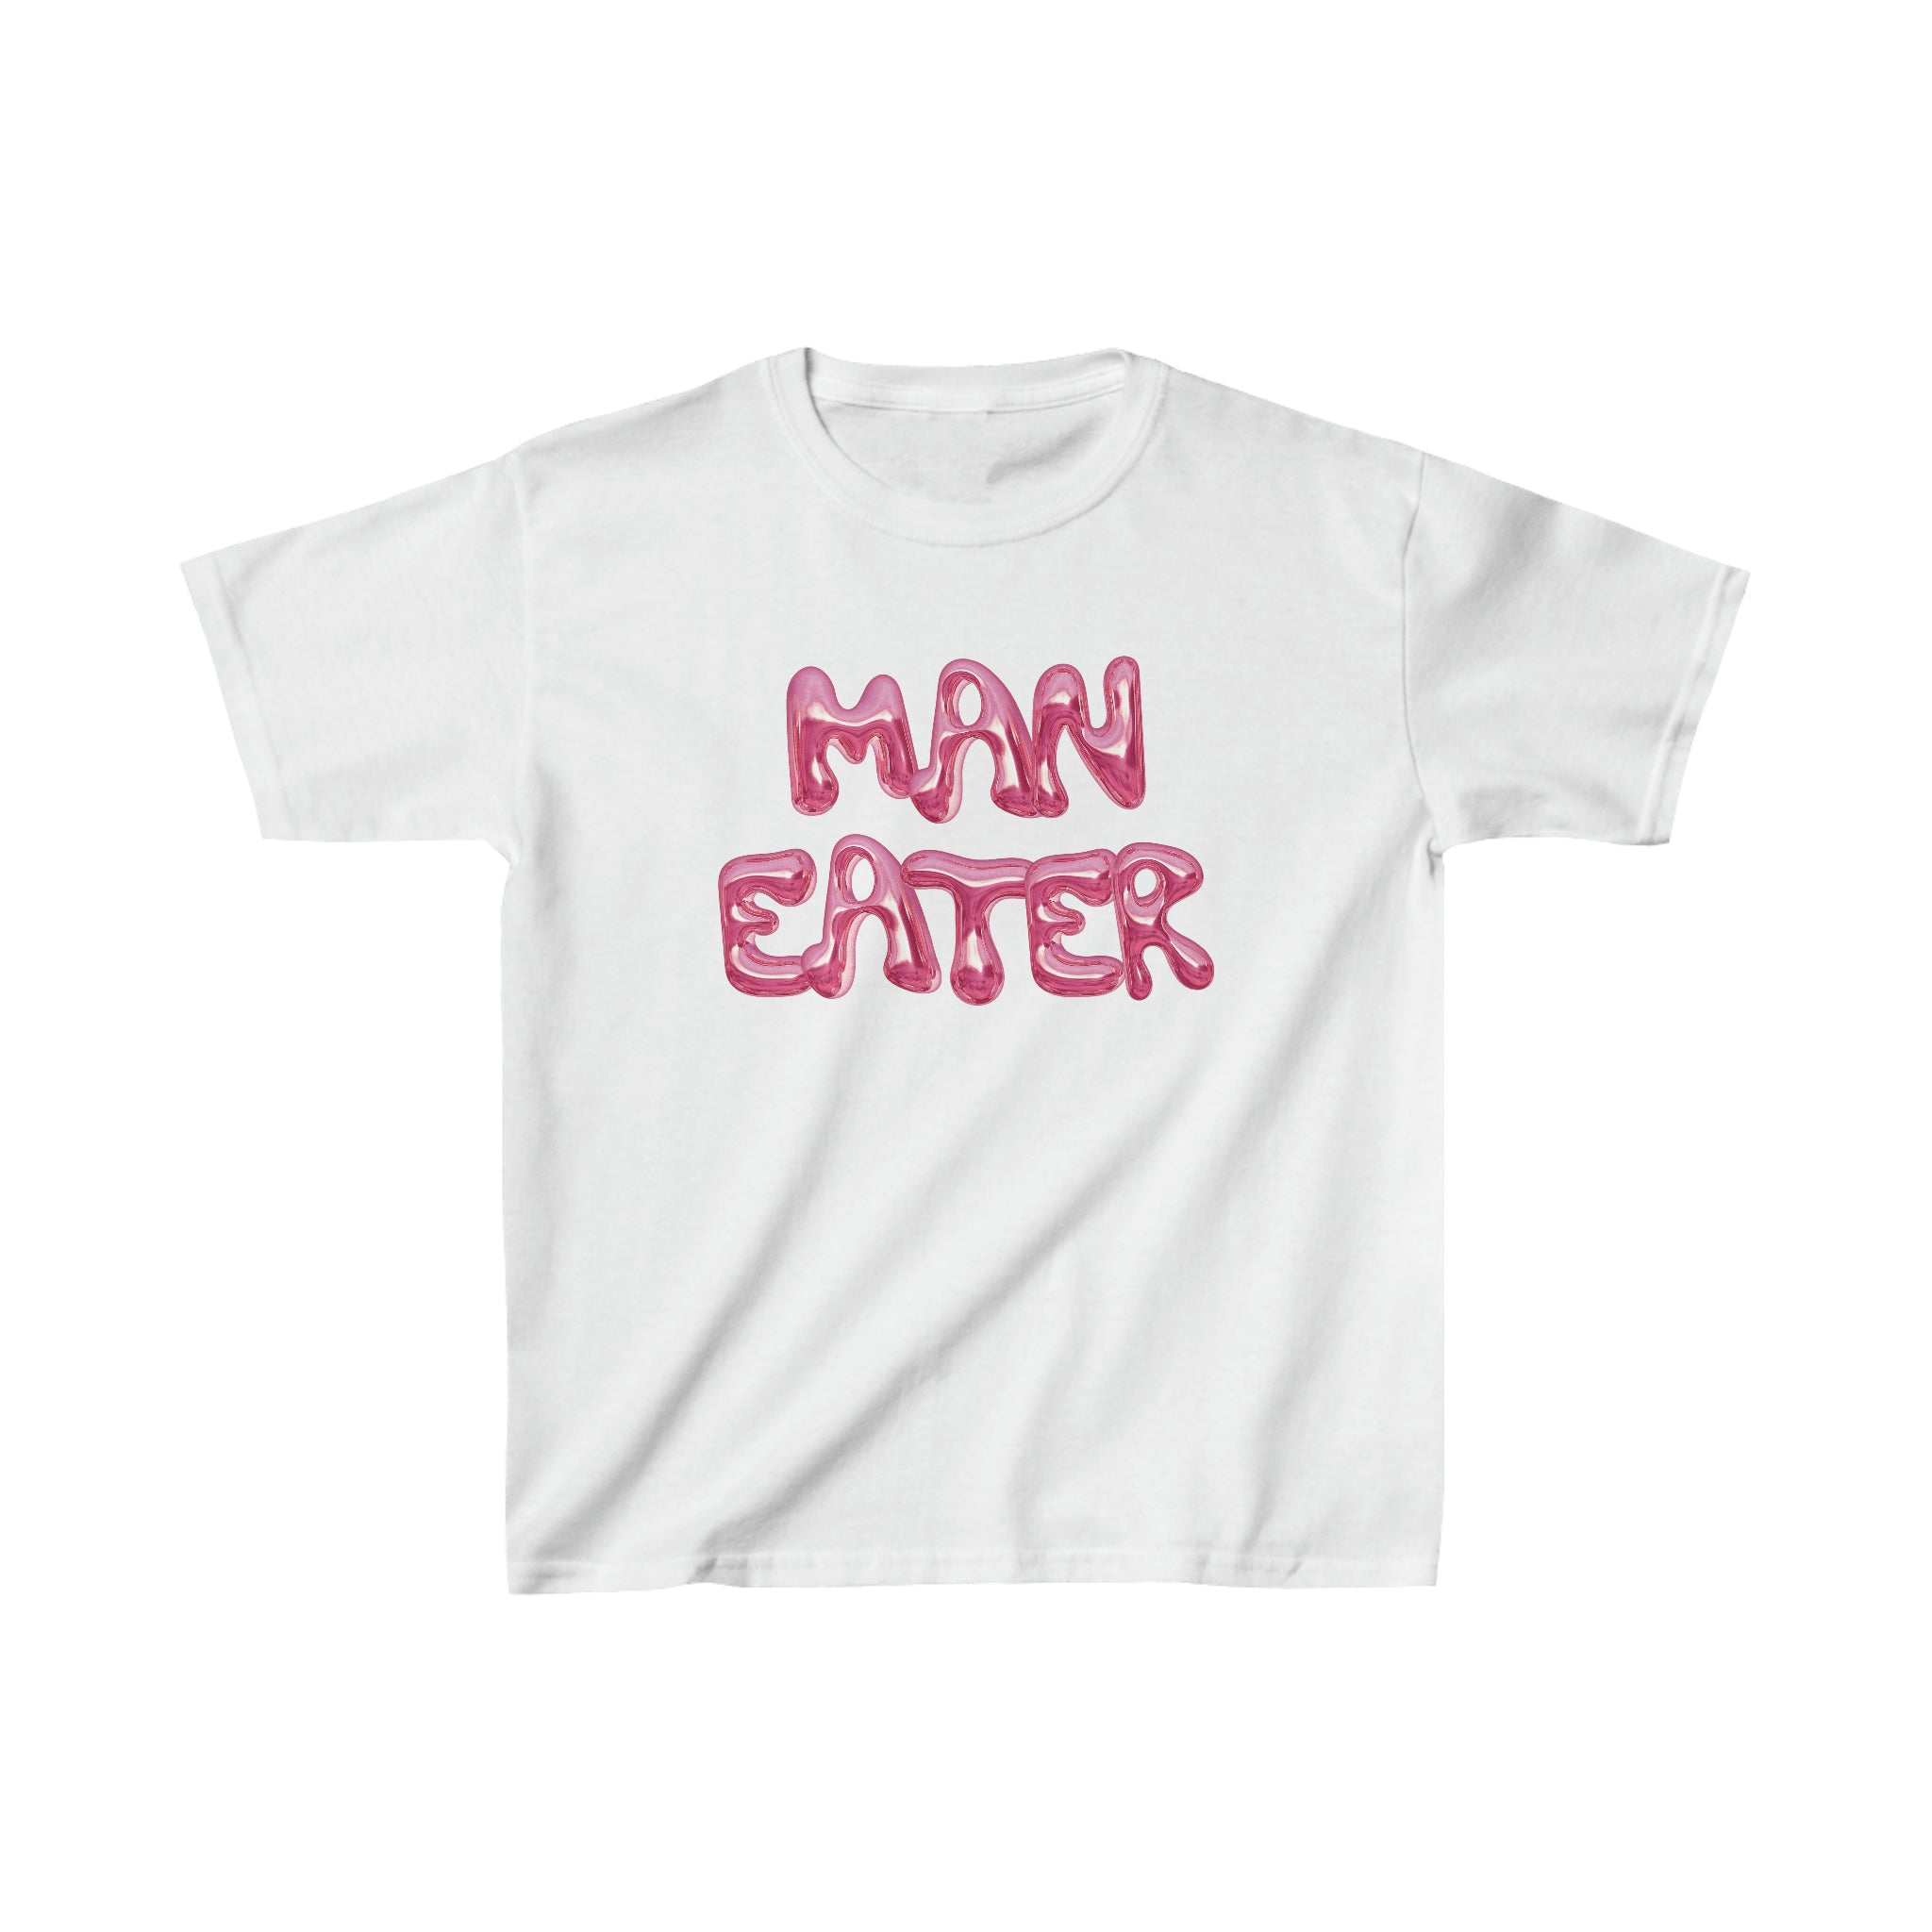 'MAN EATER' baby tee - In Print We Trust